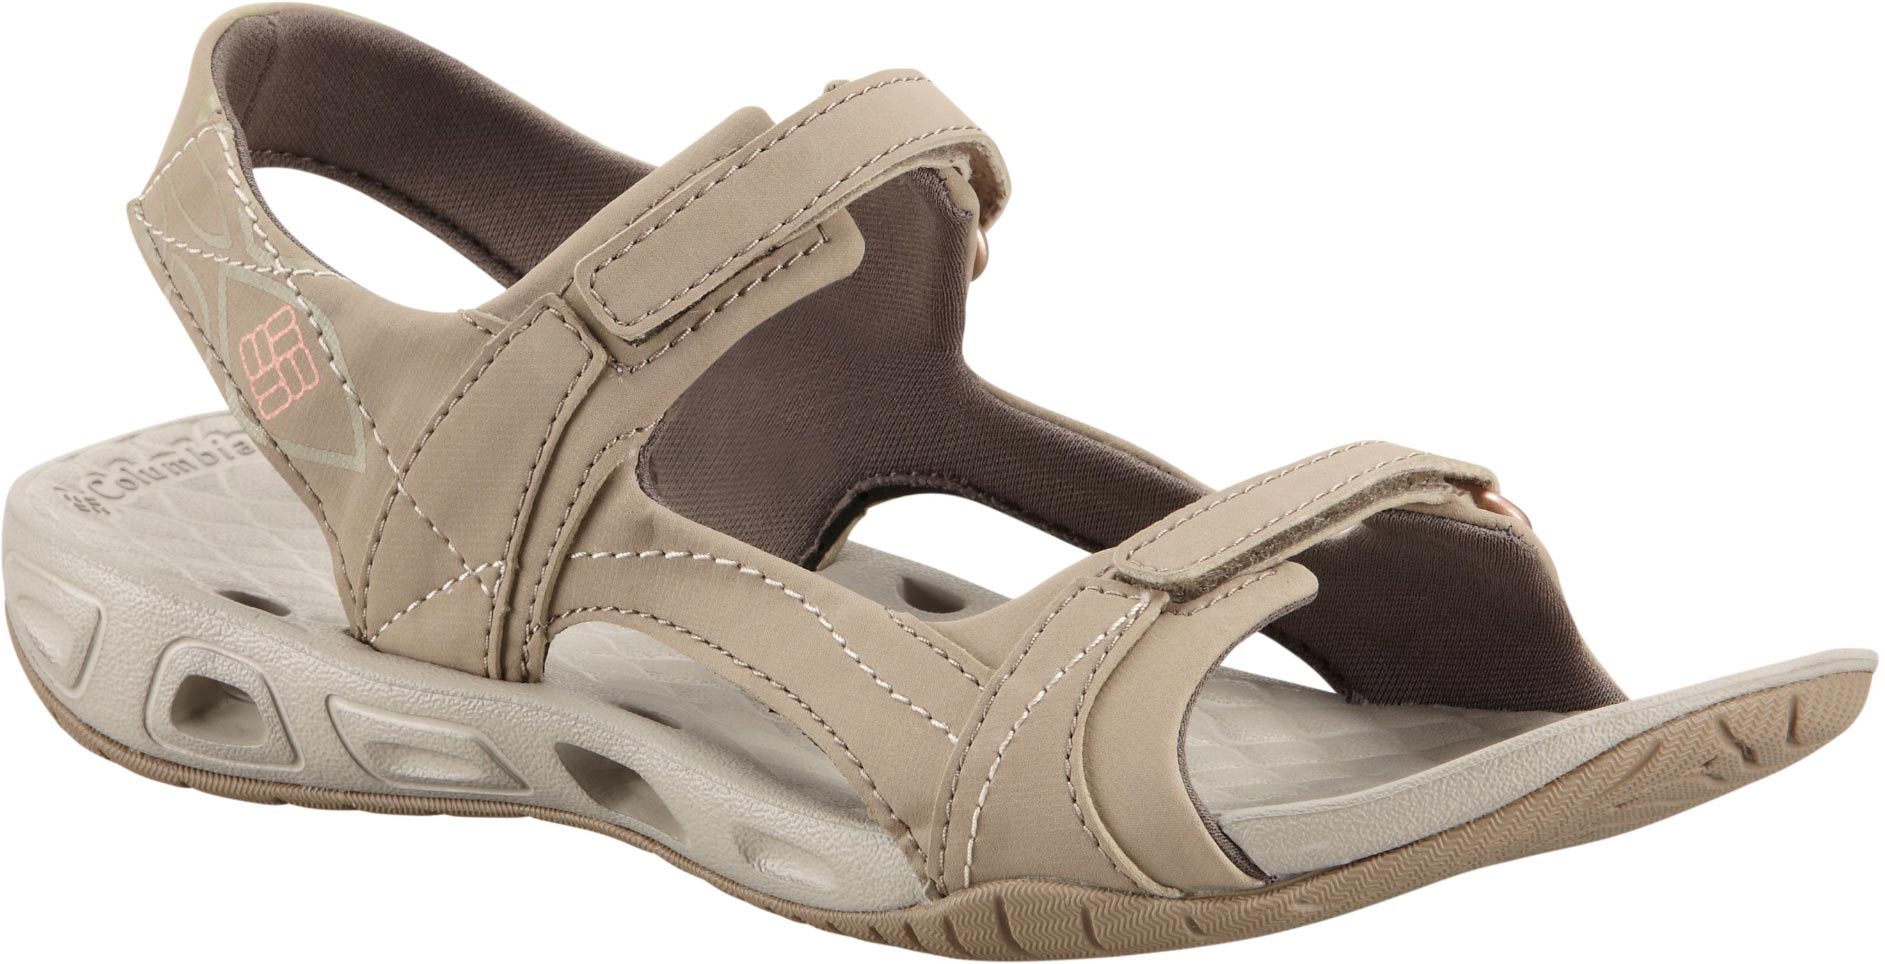 Women’s summer sandals